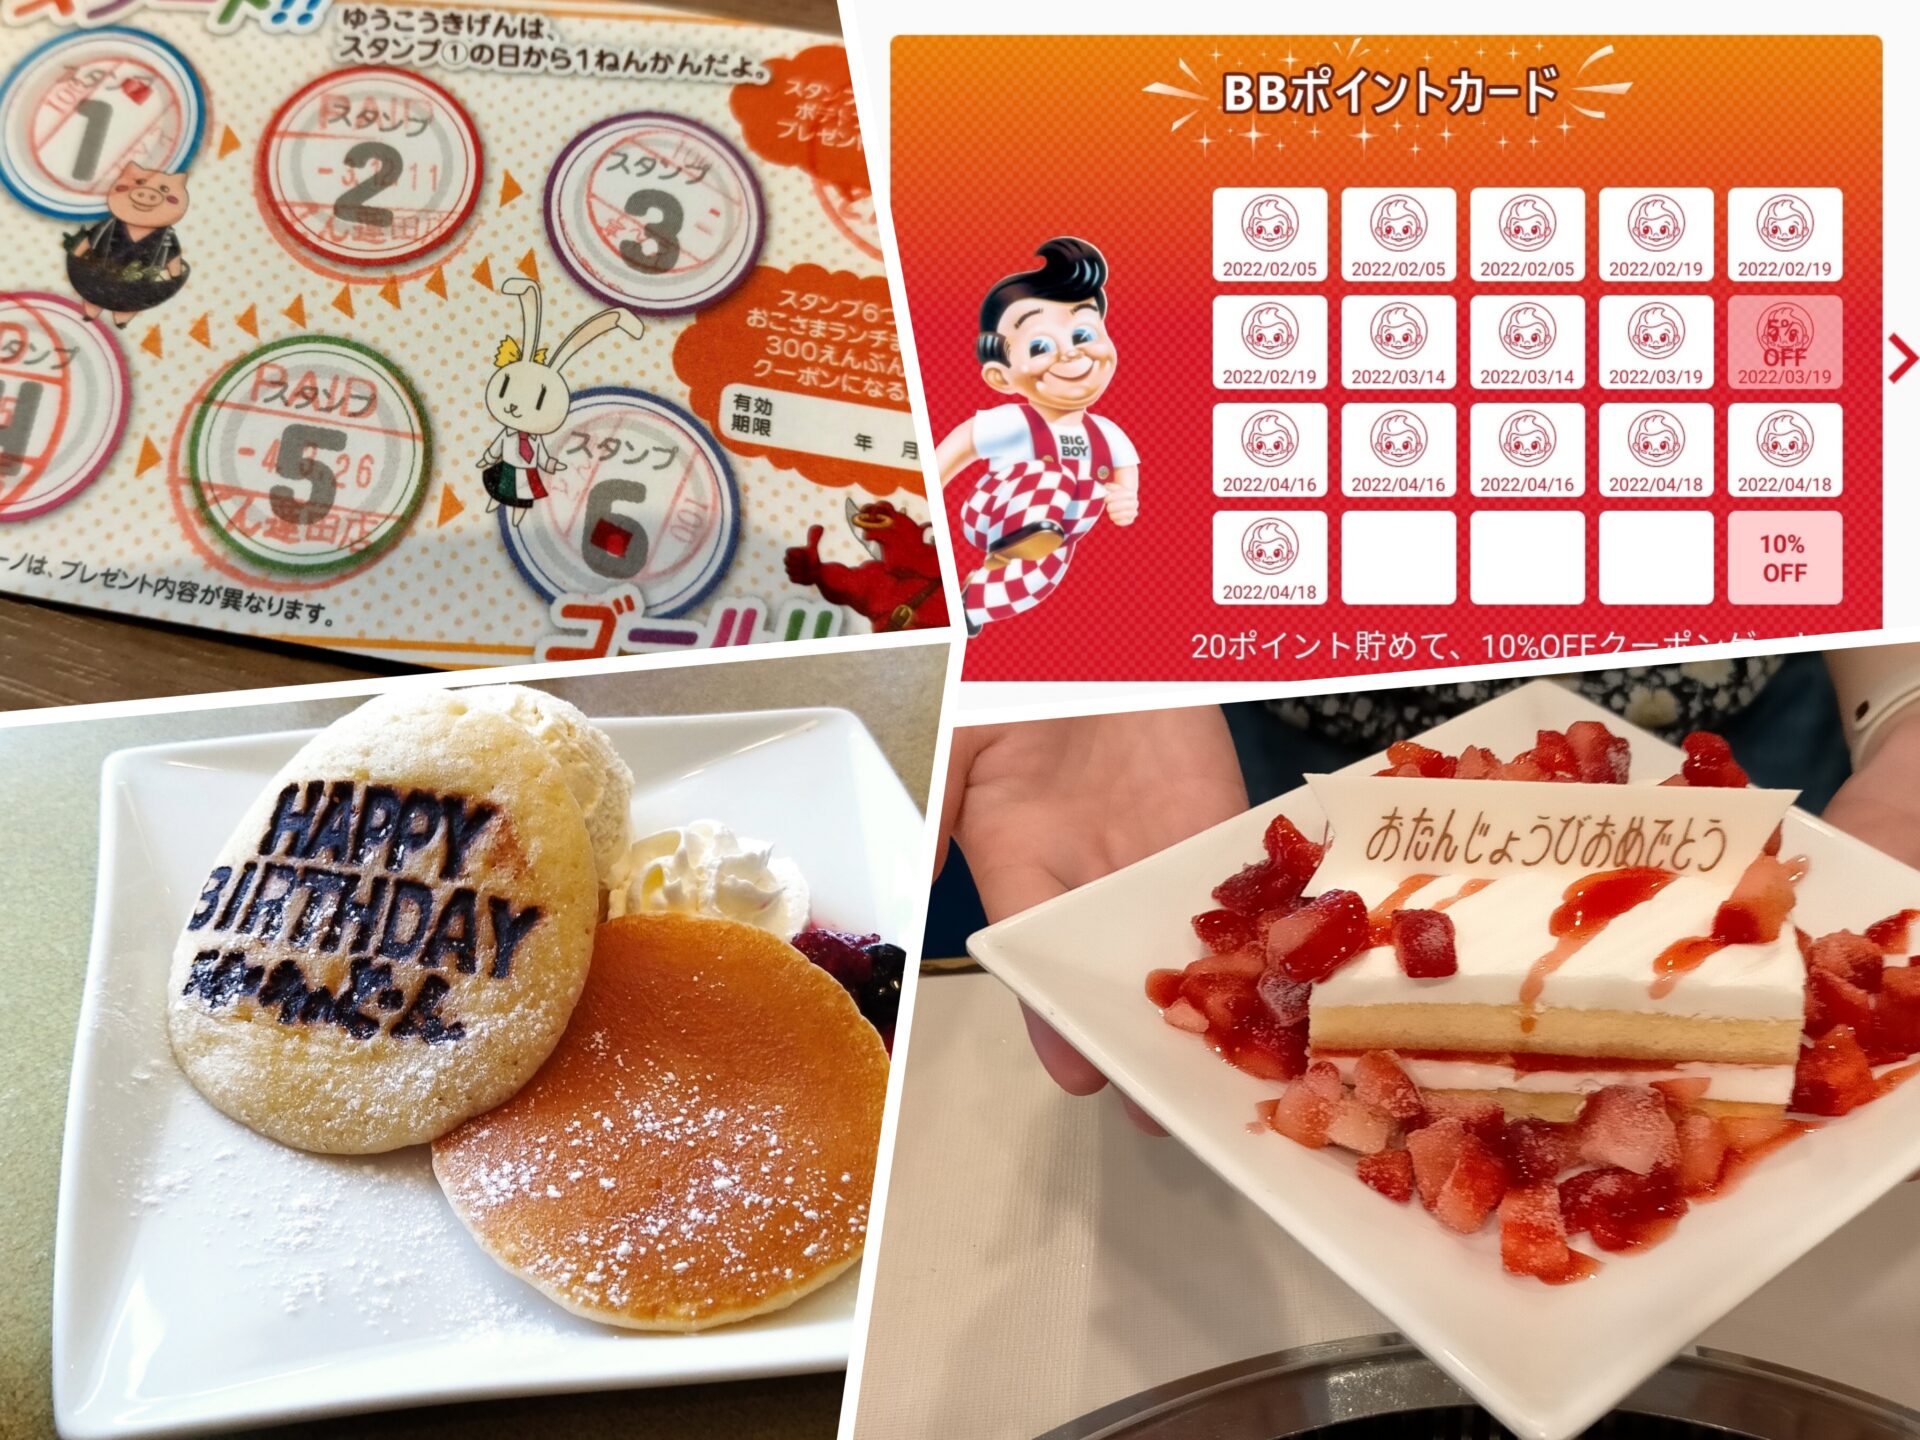 毎週末埼玉県内でランチして貯まったポイントと誕生日特典でもらったスイーツの写真